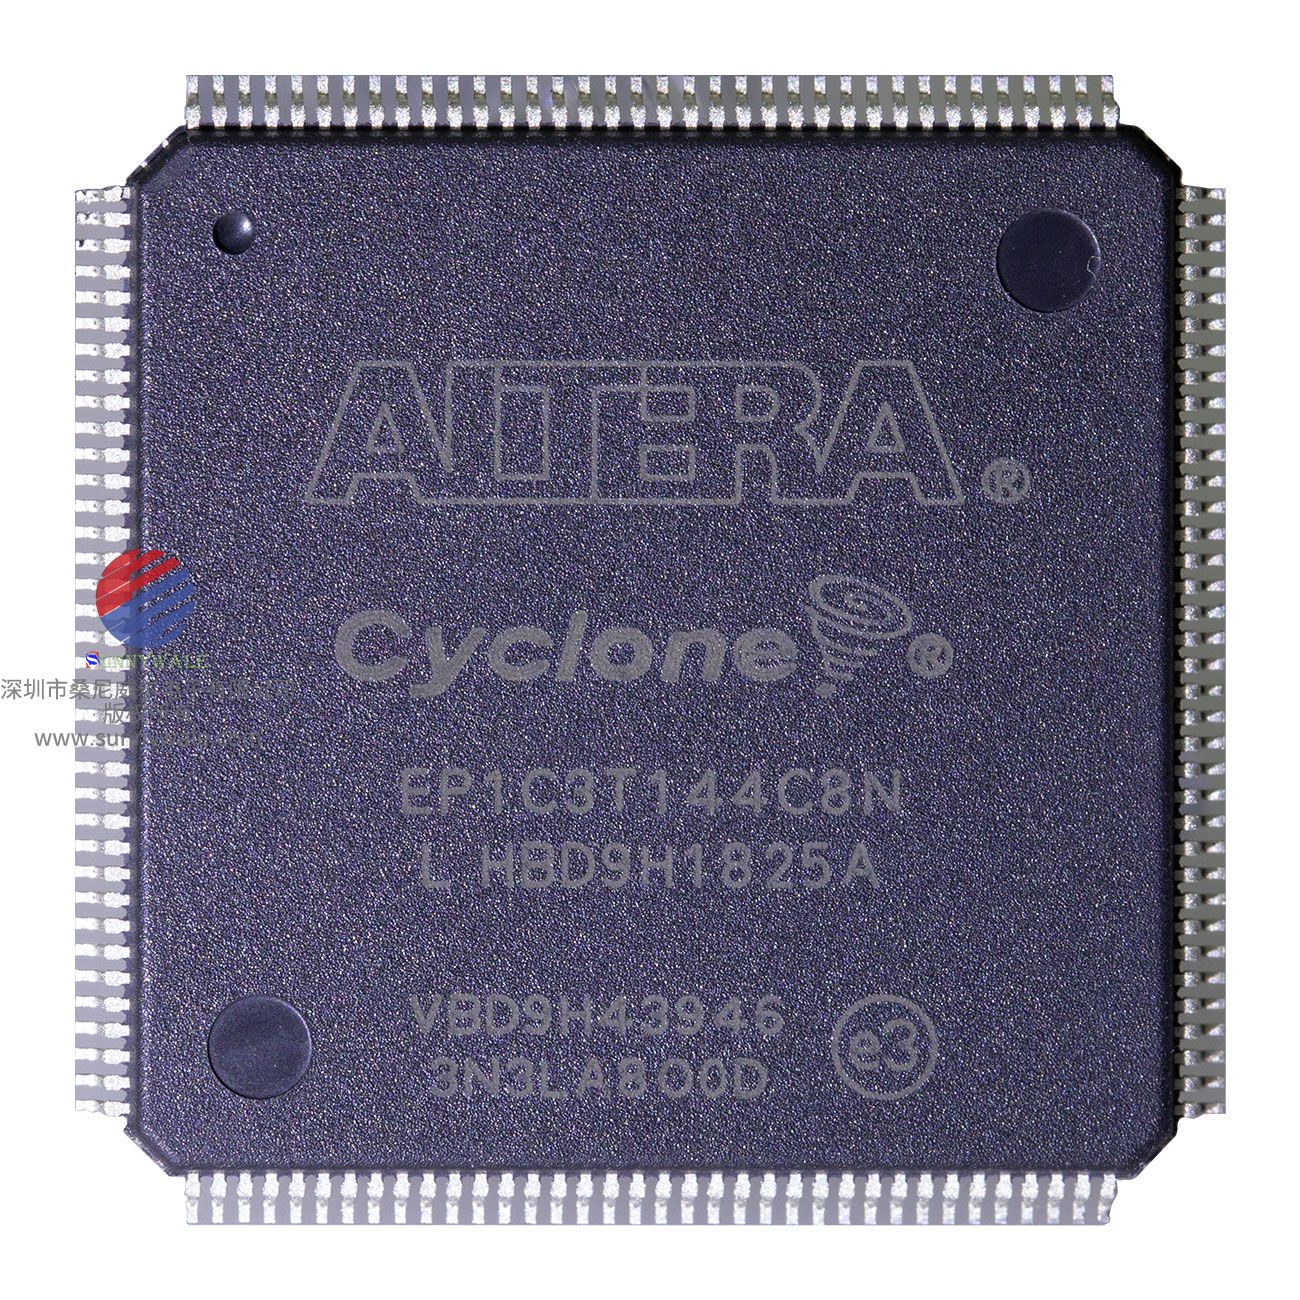 EP1C3T144C8N， ALTERA FPGA，阿特拉Cyclone，现场可编程门阵列，汽车四轮定位仪主控芯片